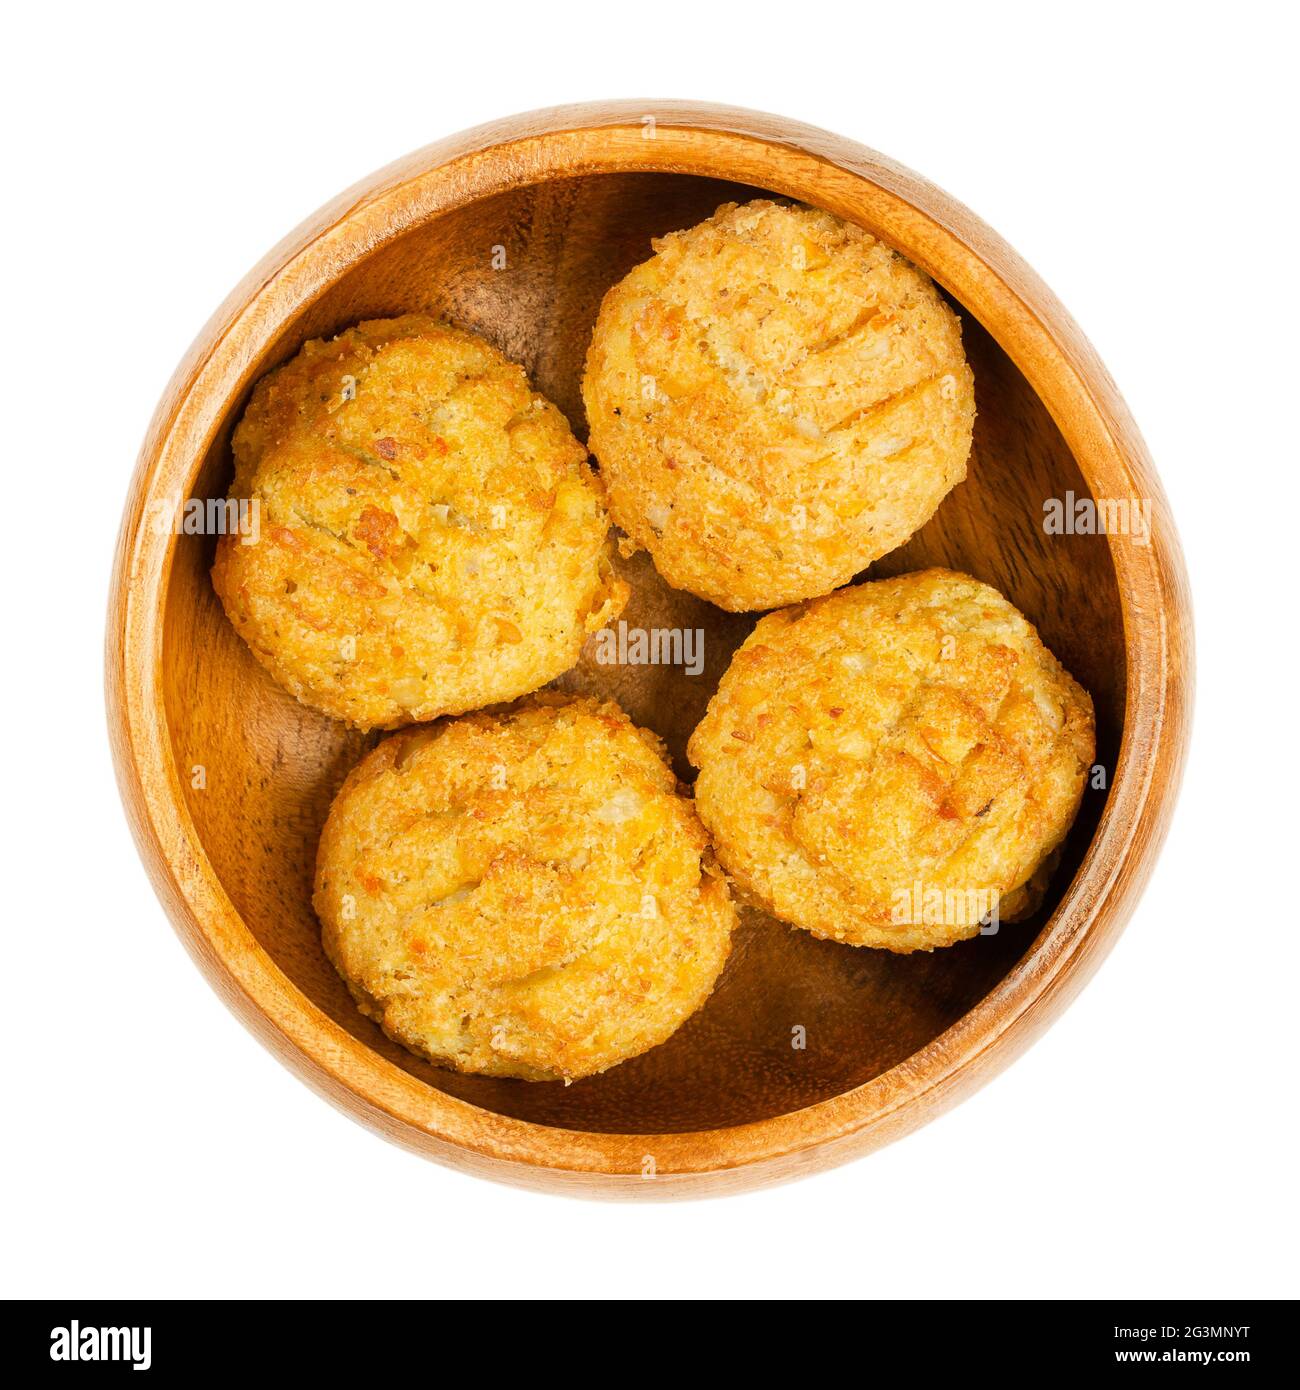 Vorgebratene vegane Falafel-Kugeln, in einer Holzschale. Gruppe von kugelförmigen Krabben, basierend auf Kichererbsen und Reis, einem traditionellen nahöstlichen Essen. Stockfoto